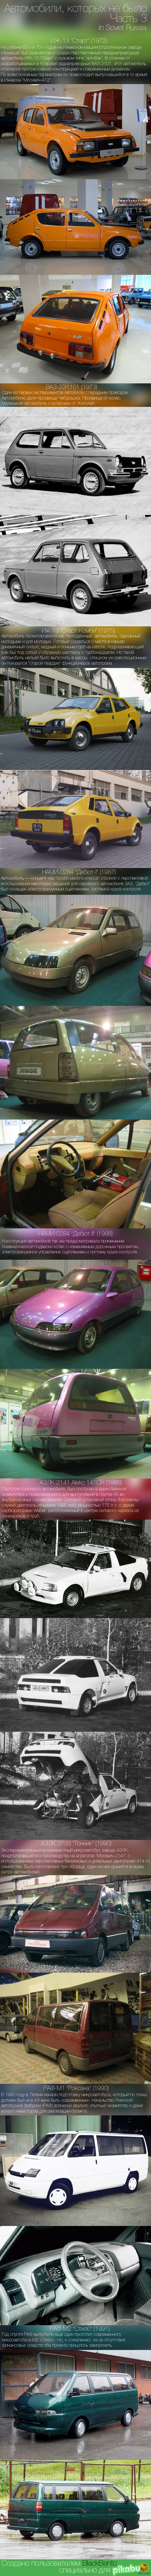 ,   .  3. .    :  <a href="http://pikabu.ru/story/avtomobili_kotoryikh_ne_byilo_3230583">http://pikabu.ru/story/_3230583</a>